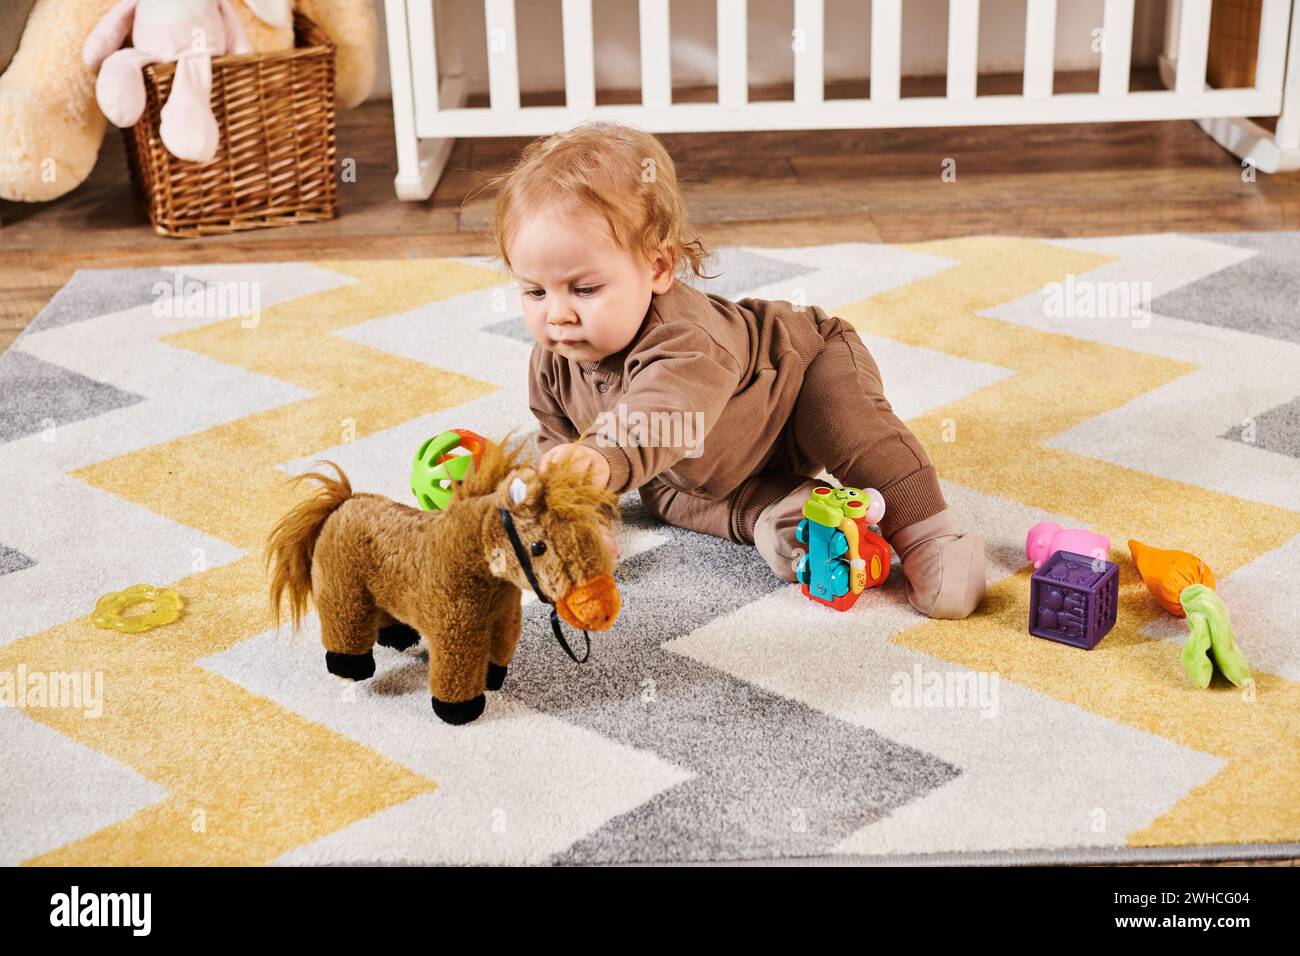 Niedliches Kind, das auf dem Boden sitzt und mit Spielzeug im gemütlichen Kinderzimmer spielt, glückliche Kindheit Stockfoto